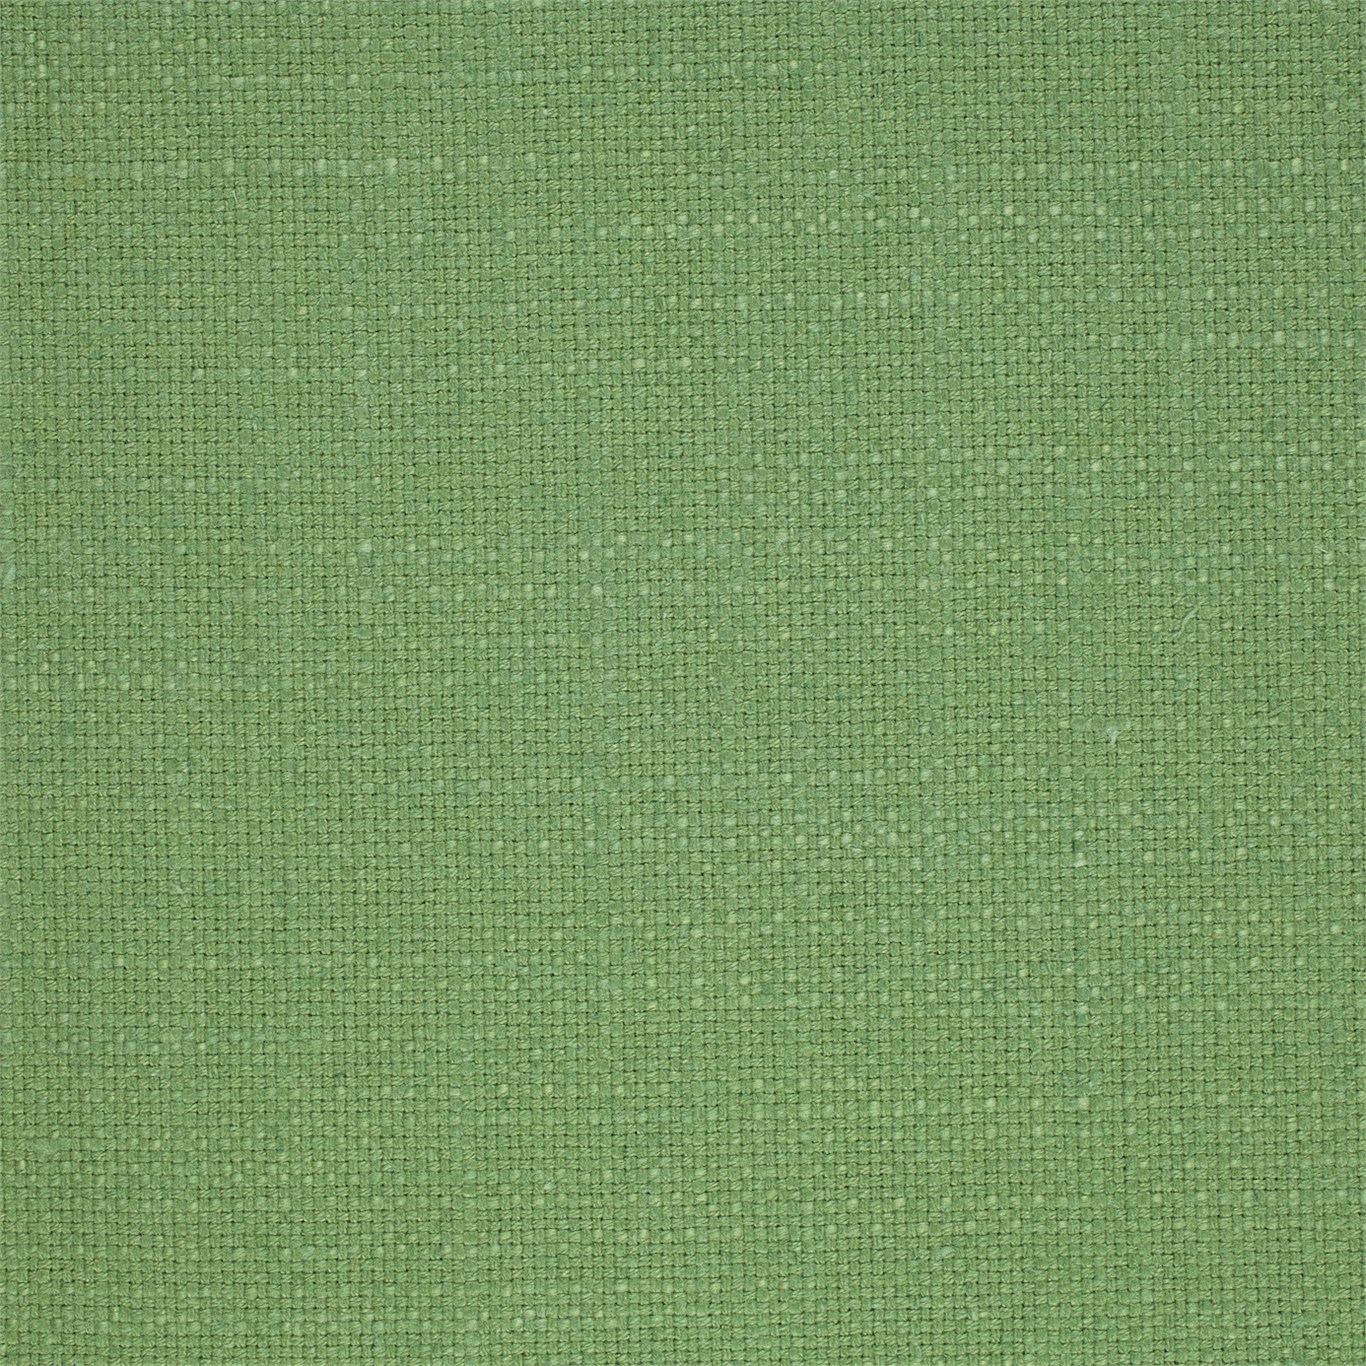 Tuscany Leaf Green Fabric by SAN